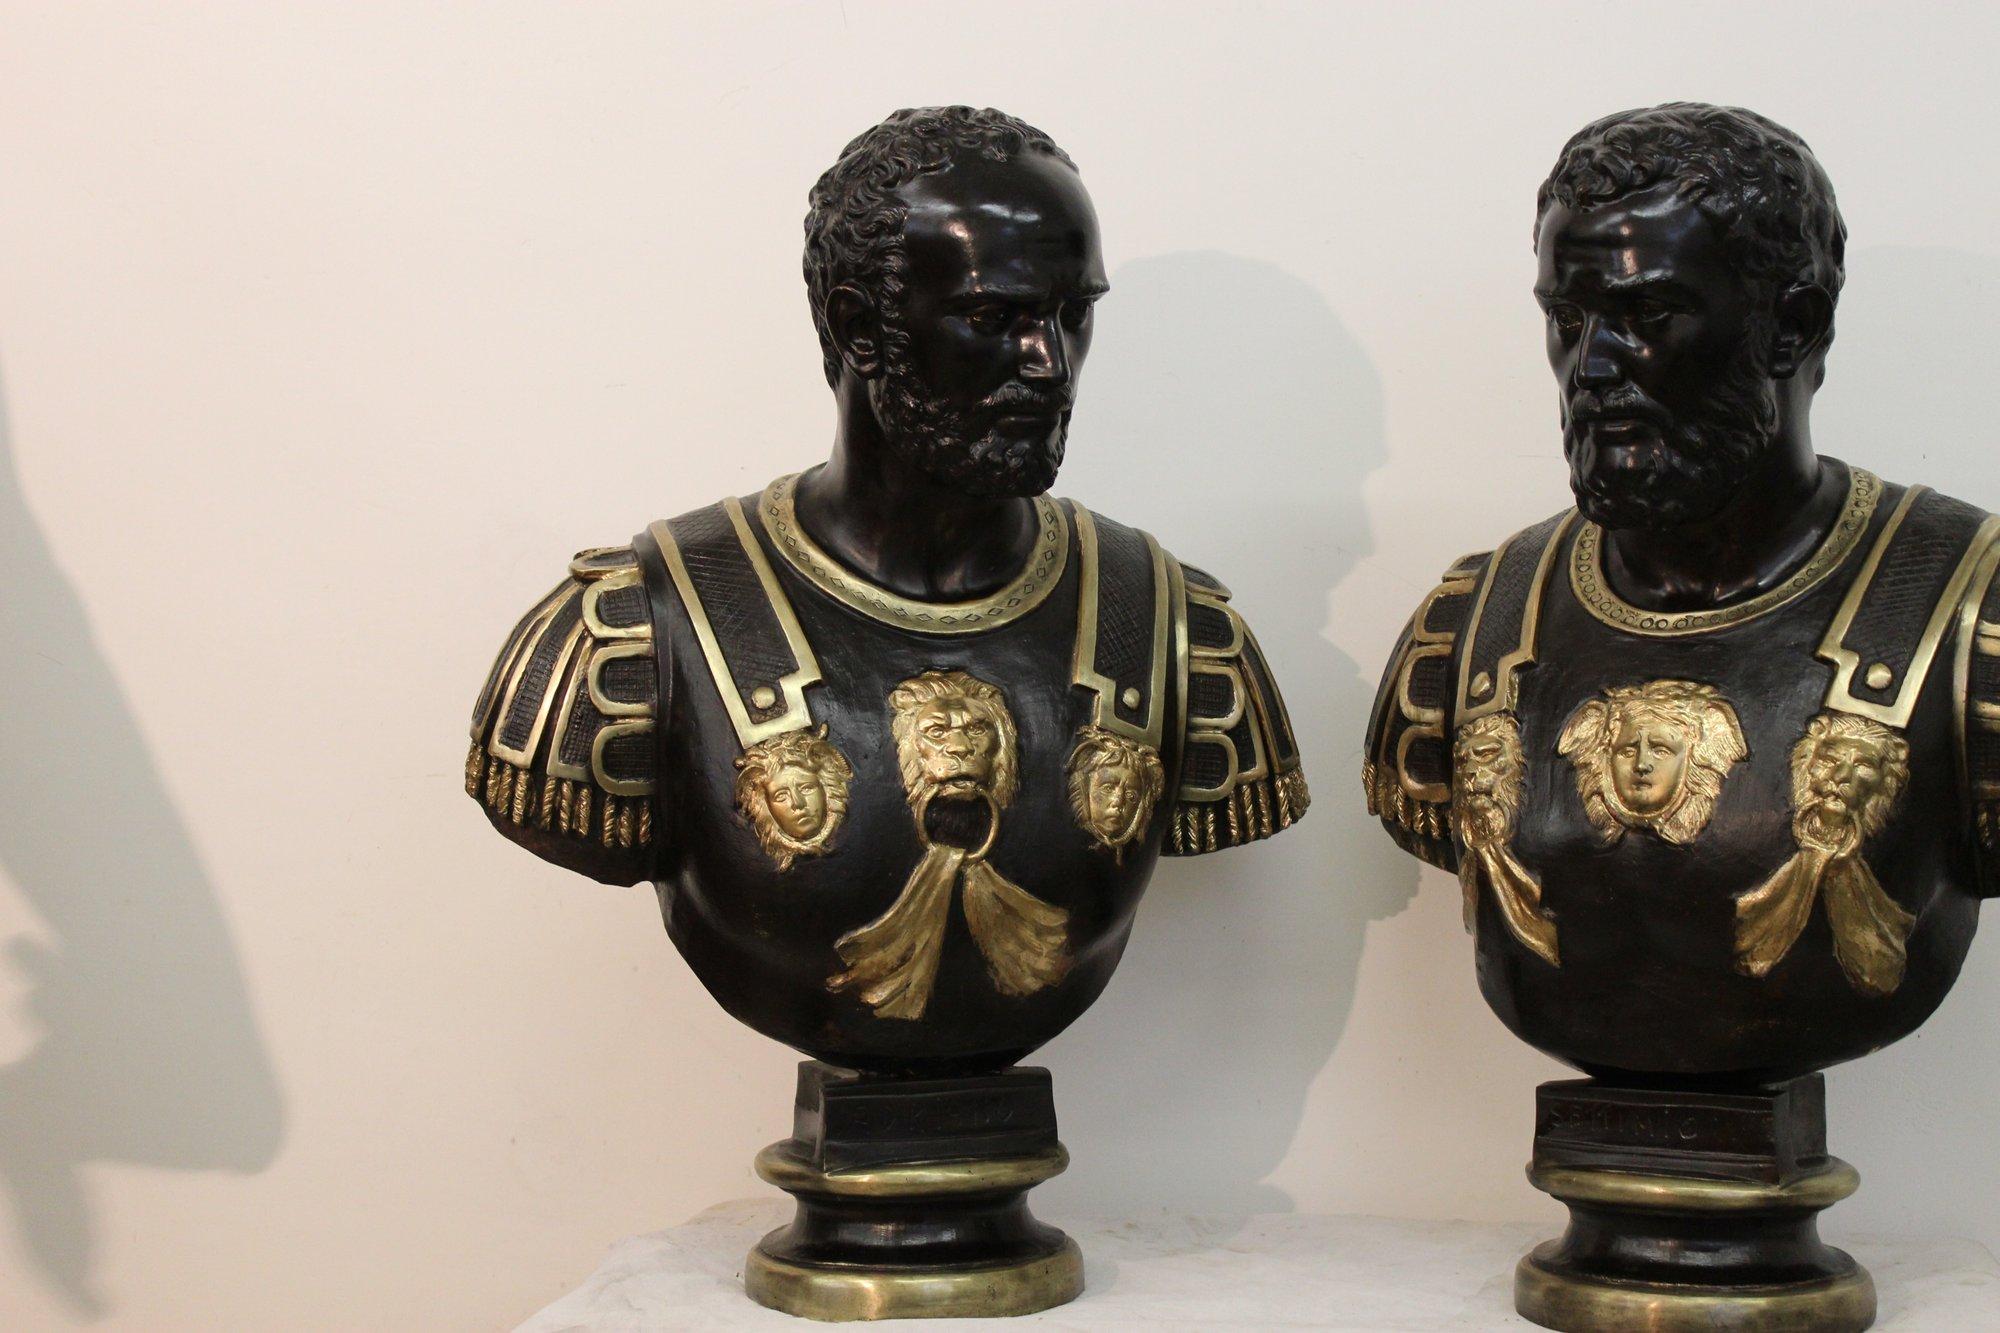 Coppia di Imperatori Romani in bronzo, Settimio e Adriano eseguiti in bronzo con la tecnica a cera persa,
xx secolo, con rifiture in parti dorate.